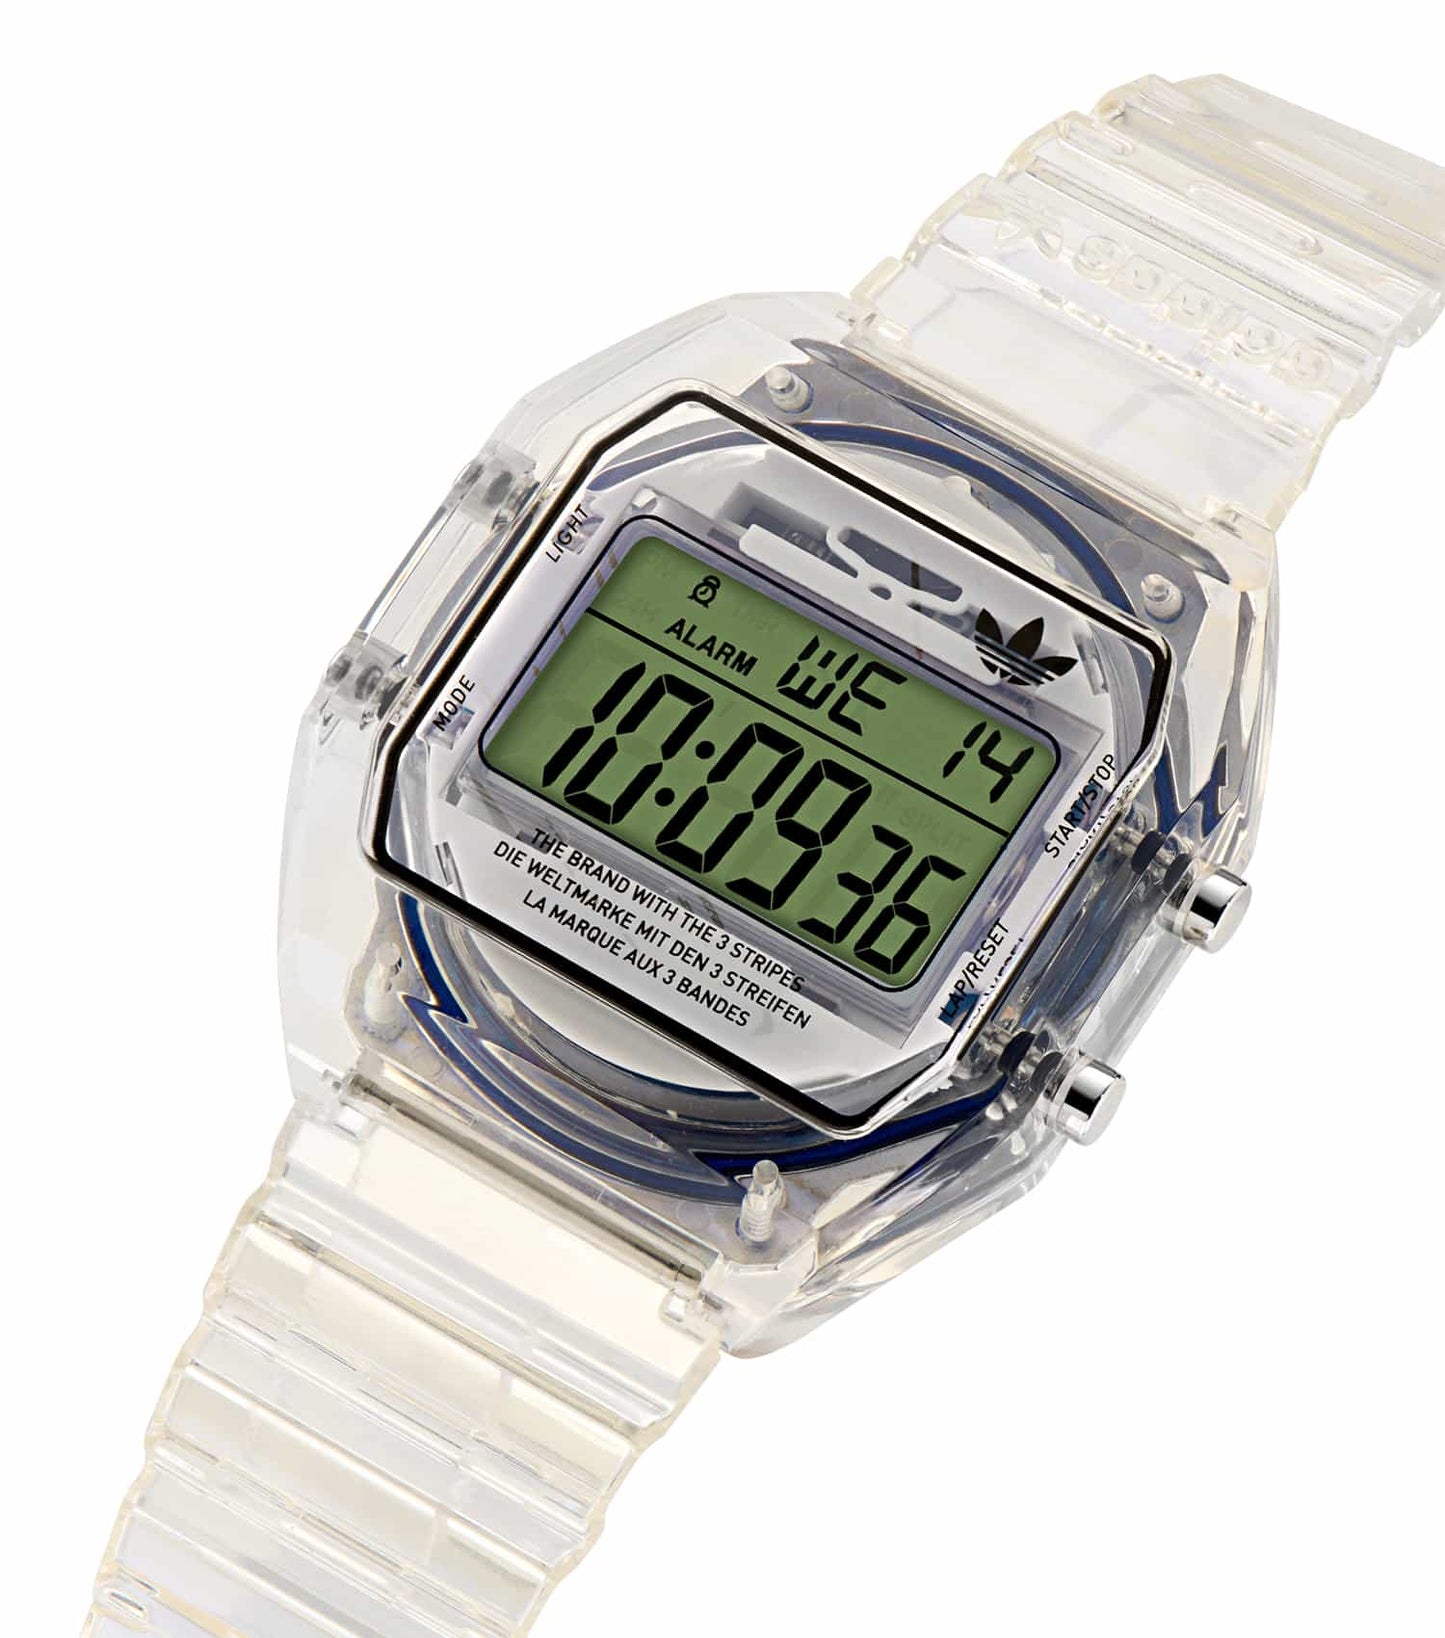 Unisex Digital Two Crystal Digital Watch 36mm